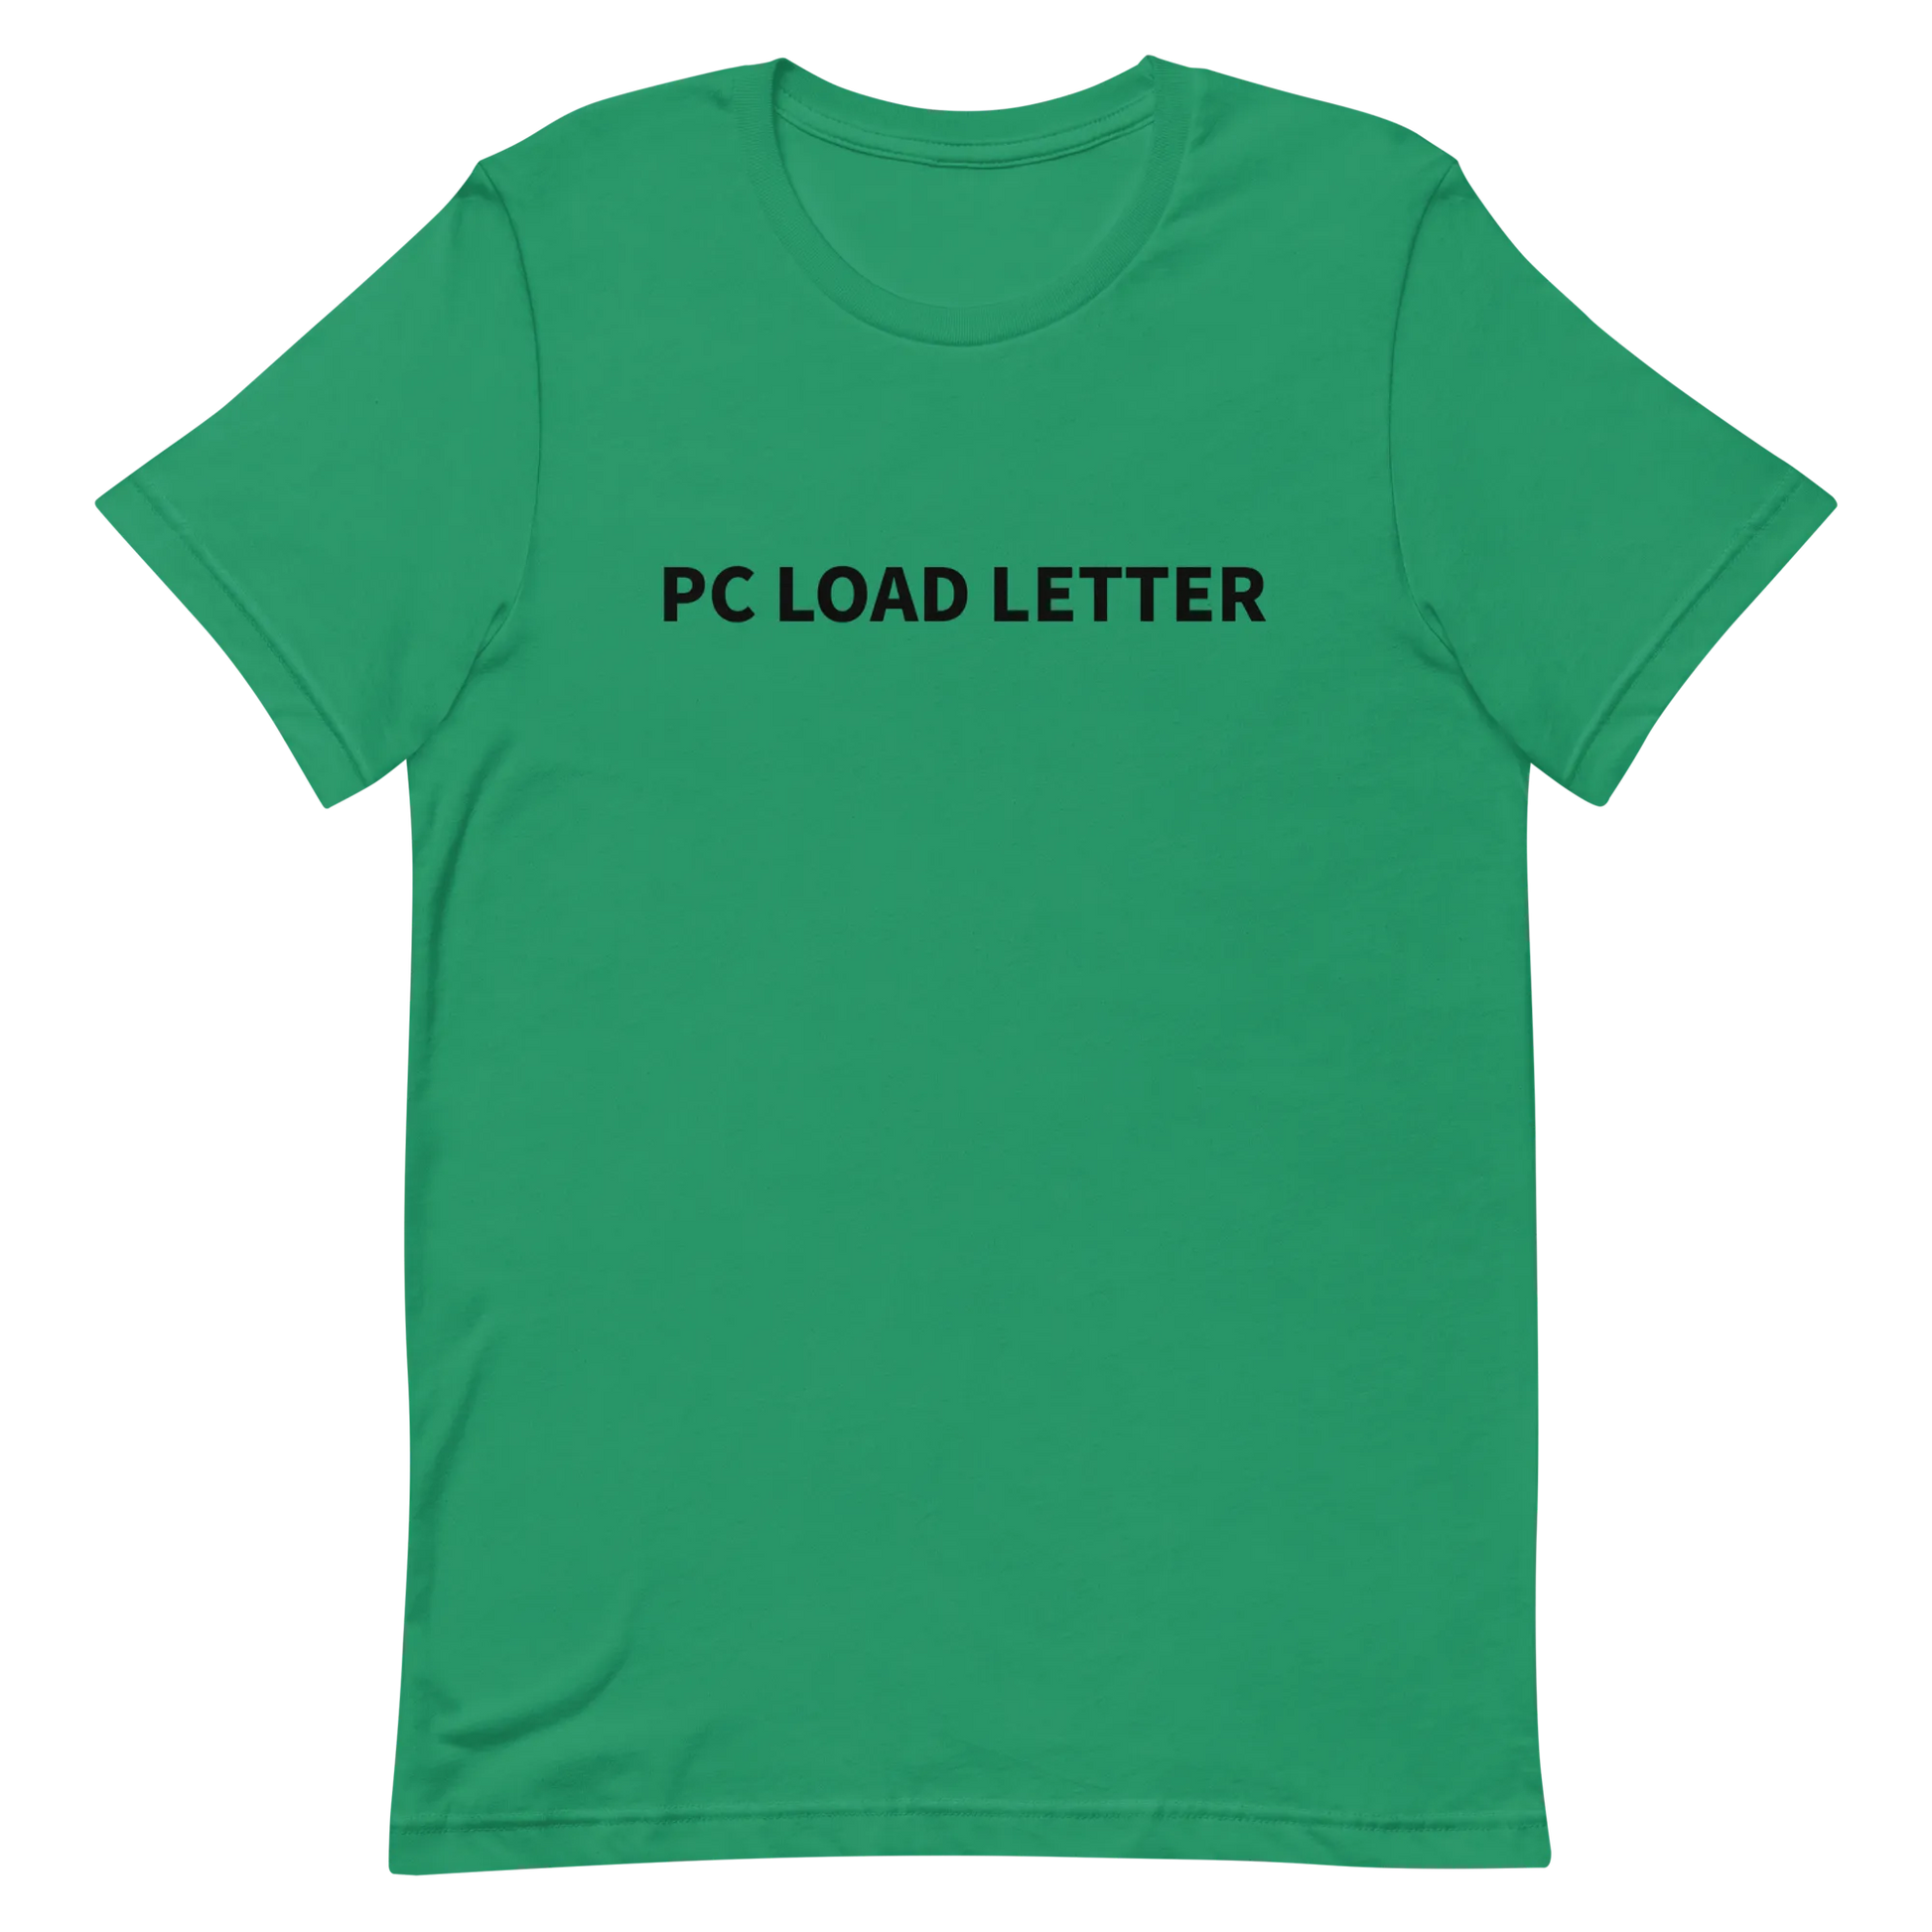 PC Load Letter Tee in Kelly flatlay